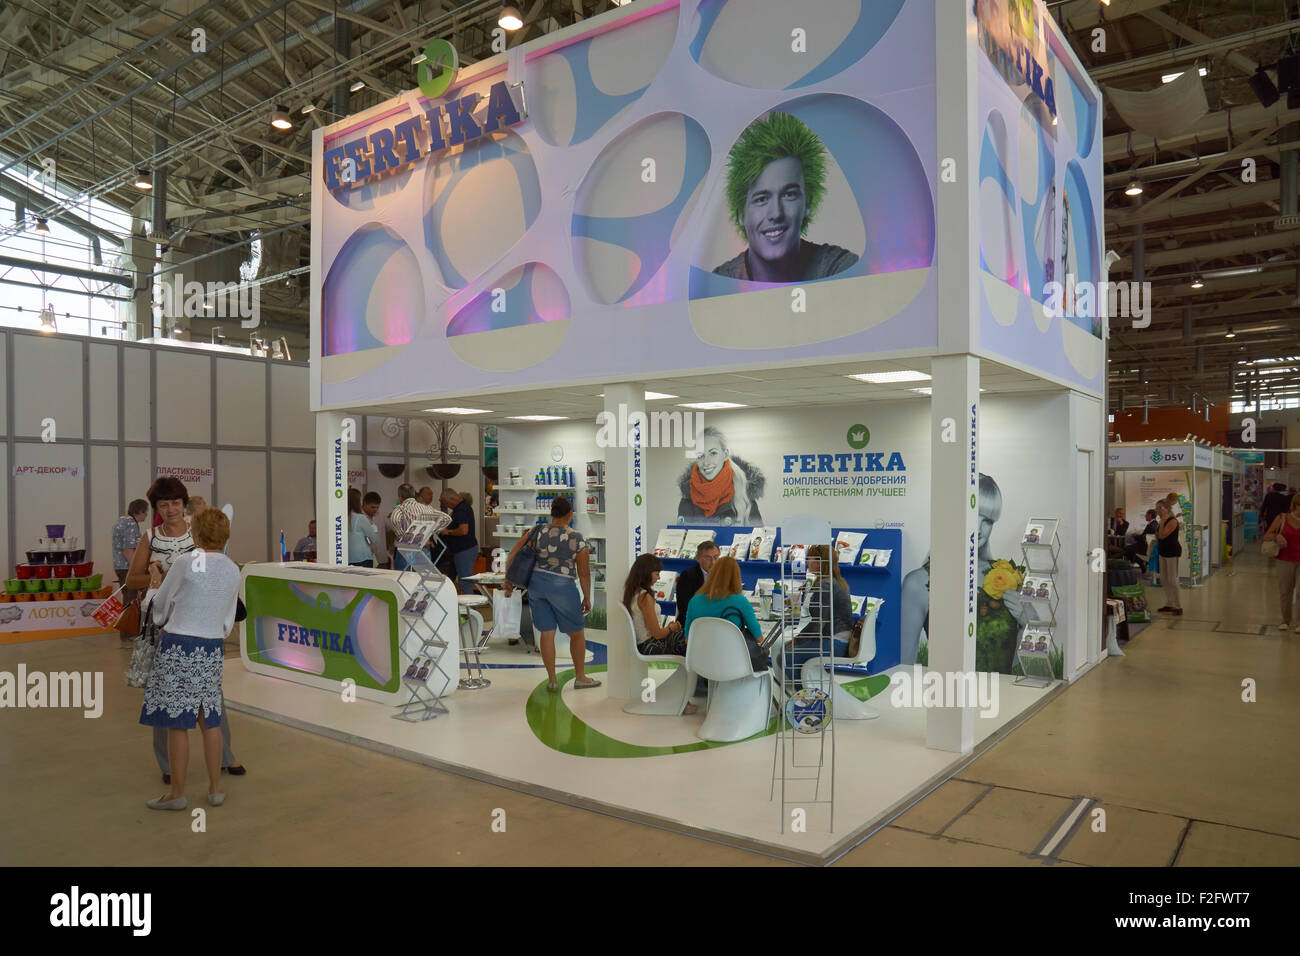 All-Russian Exhibition Center, Moskau, Russland - 27. August 2015: Stand der Fertika Firma, die Dünger produziert. Bei "Moskau Stockfoto